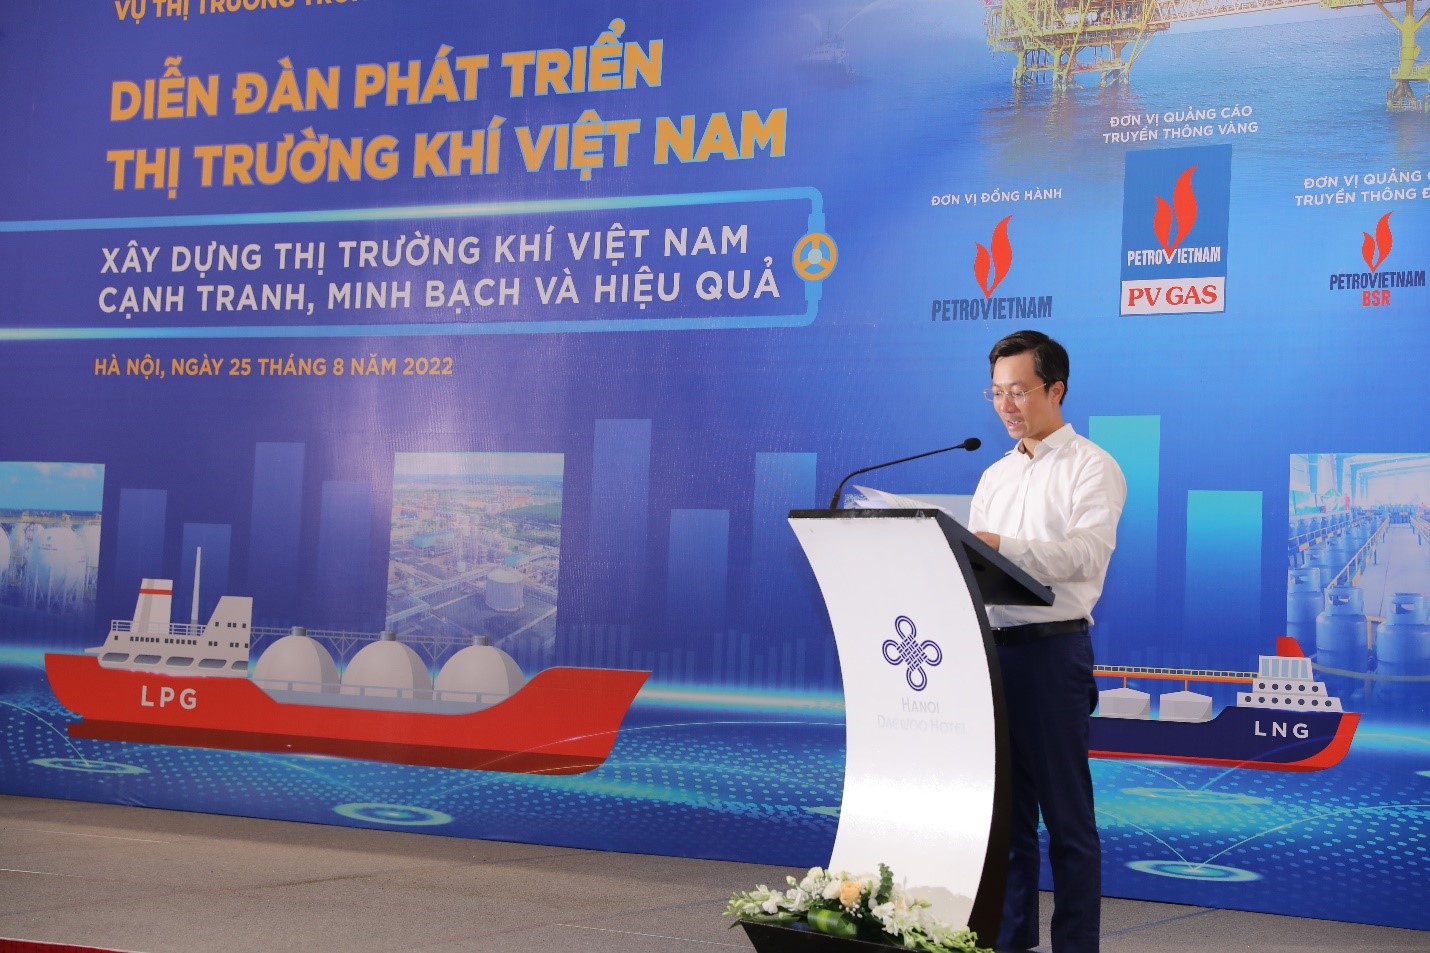 Từng bước tháo gỡ khó khăn của doanh nghiệp Khí thông qua “Diễn đàn phát triển thị trường khí Việt Nam” - 2